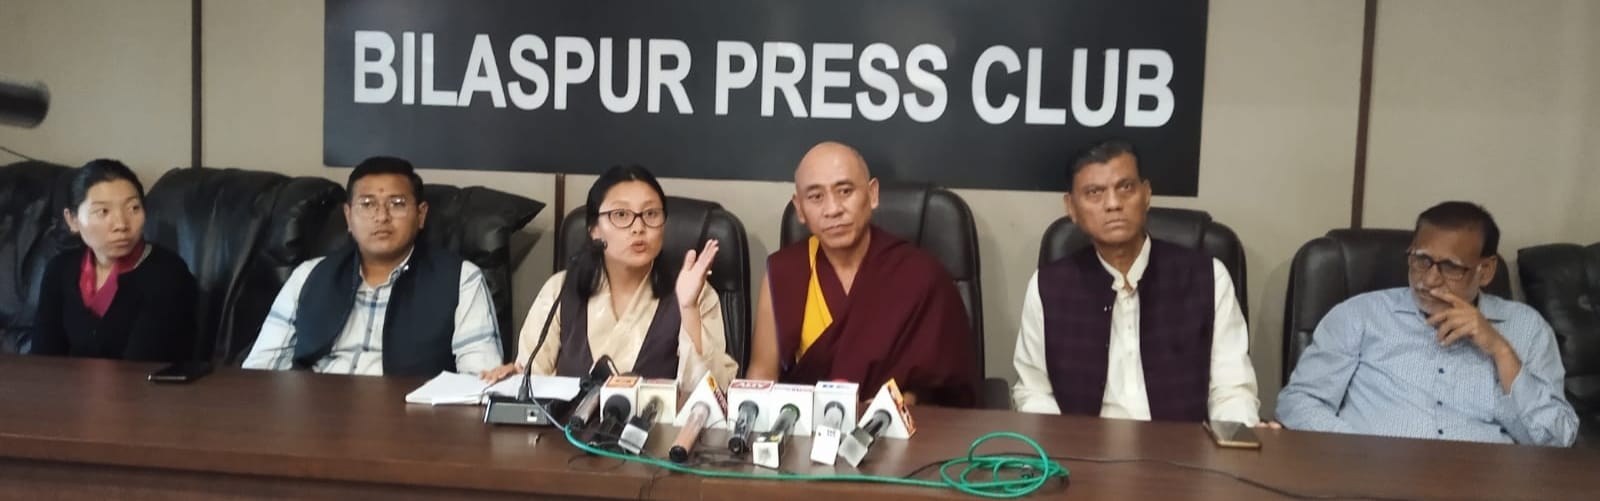 तिब्बत को चीन नेस्तोनाबूद करना चाहता है, भारत हमारी ताकत, उसी से तिब्बत की आजादी के लिए उम्मीद… तेनजिन चुनजी